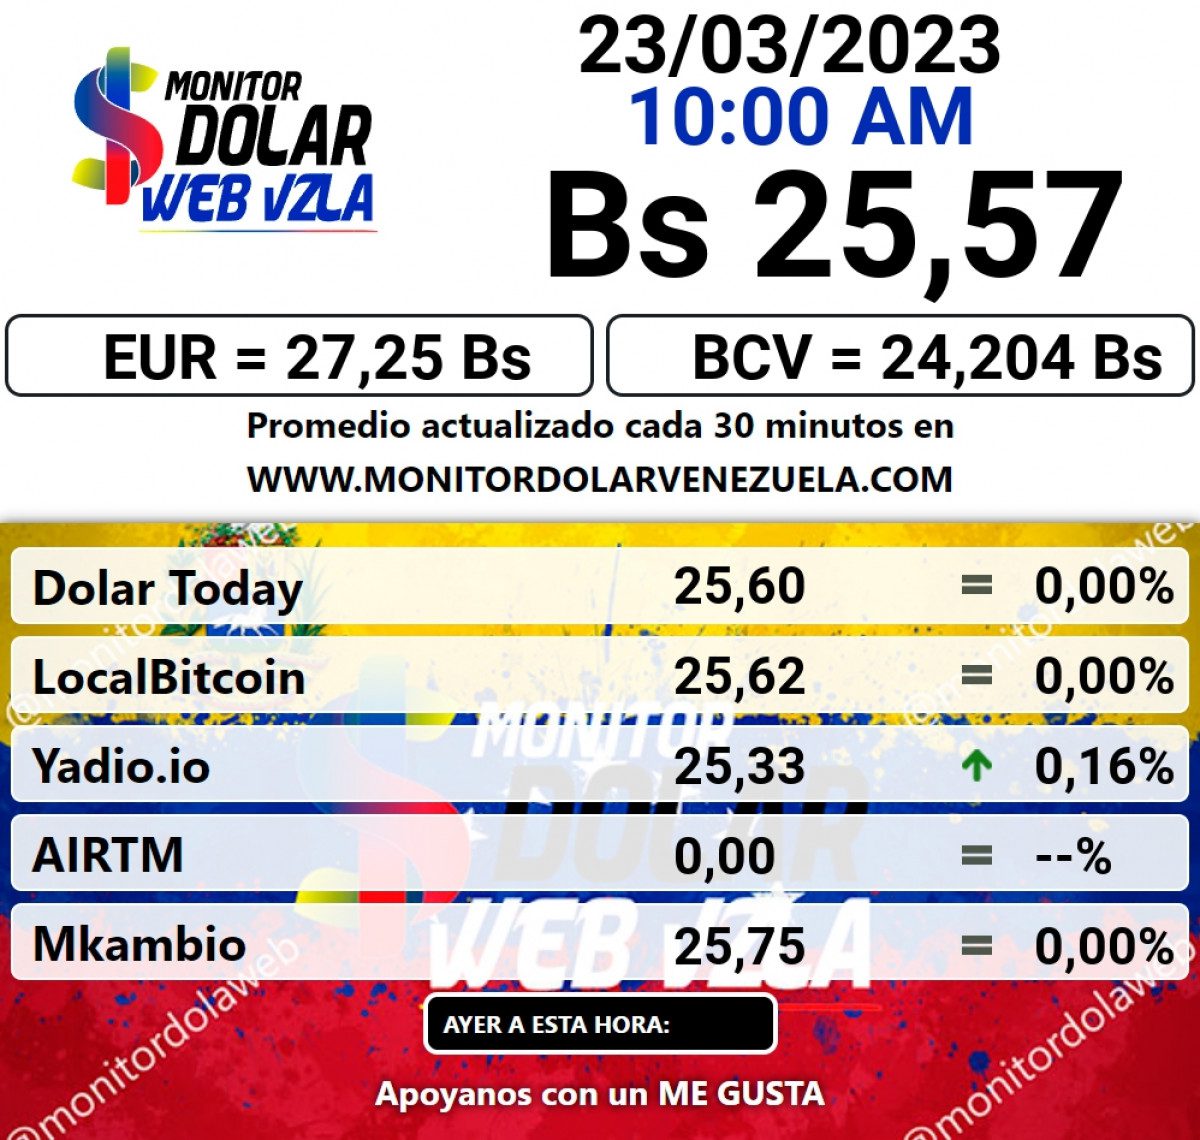 dolartoday en venezuela precio del dolar este jueves 23 de marzo de 2023 laverdaddemonagas.com monitor0998